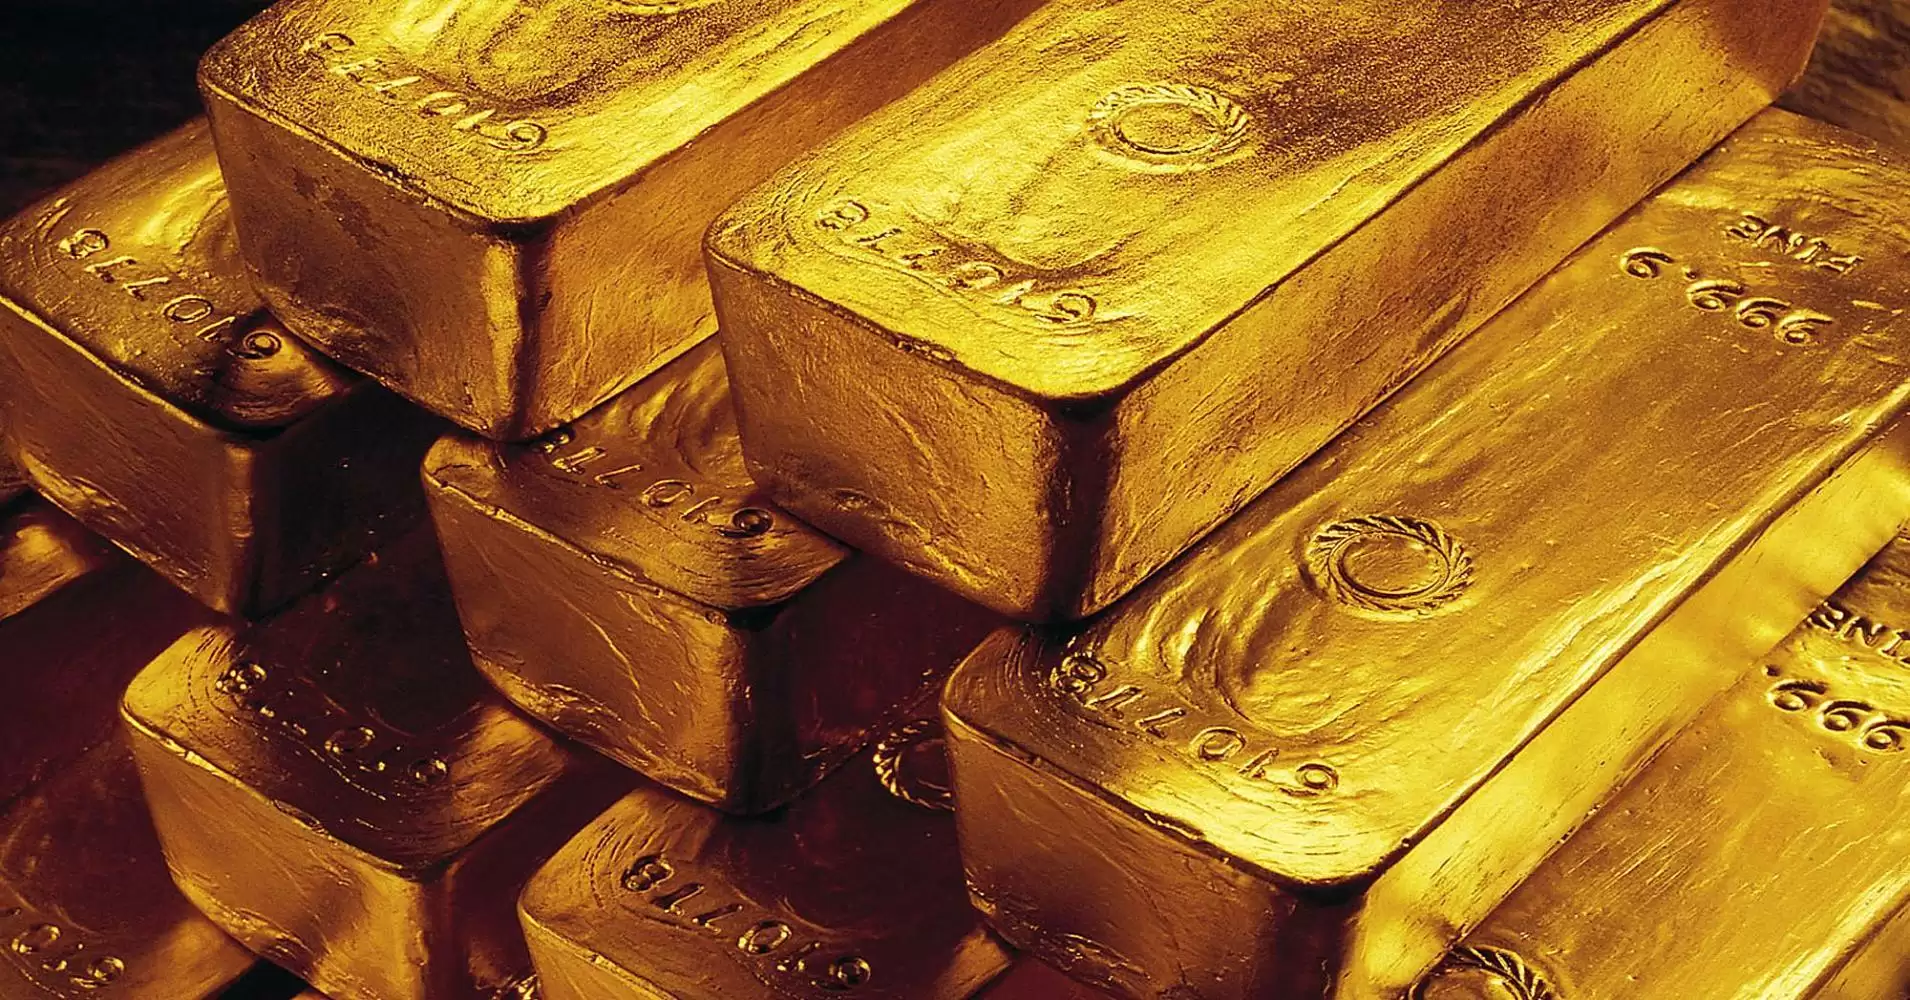 इन पांच देशों के पास है सबसे ज्यादा सोने का भंडार जानिए भारत के पास कितने का खजाना